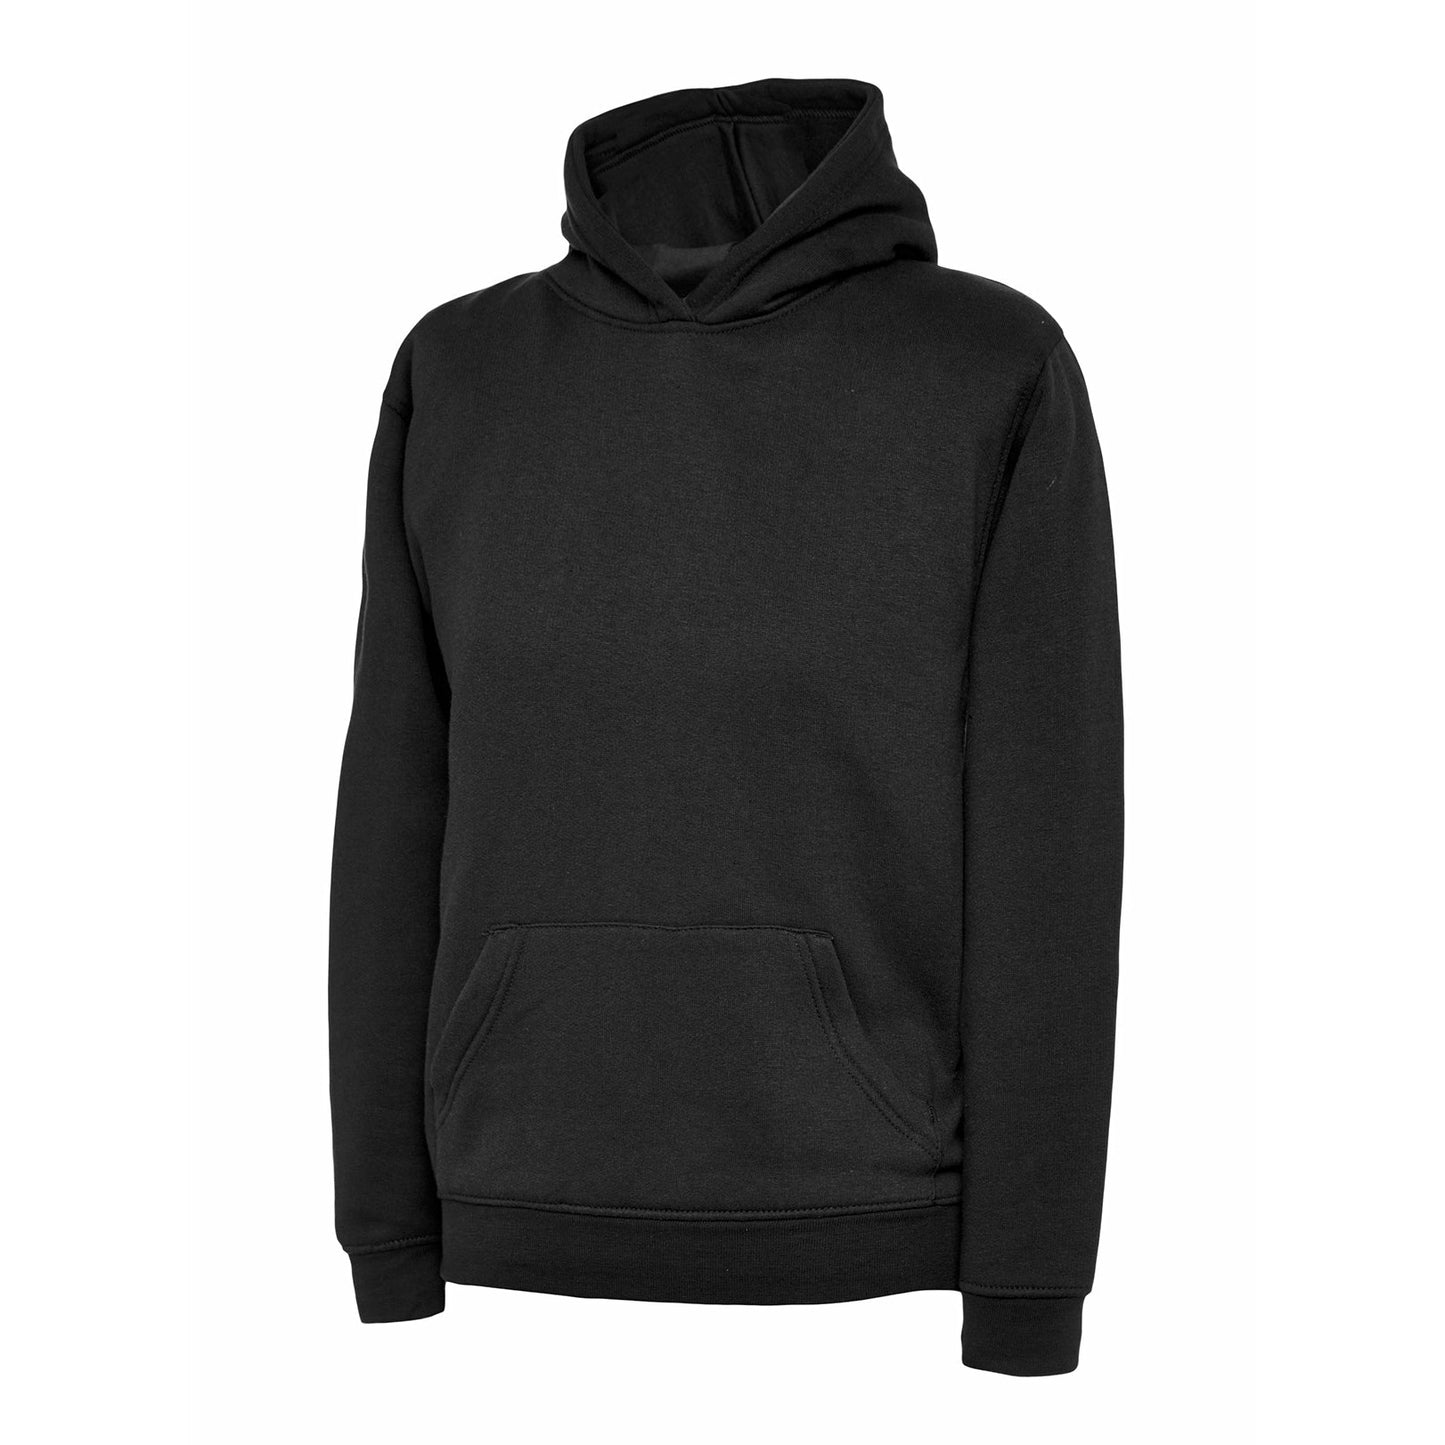 Childrens Hooded Sweatshirt (2 - 4 YRS) Black